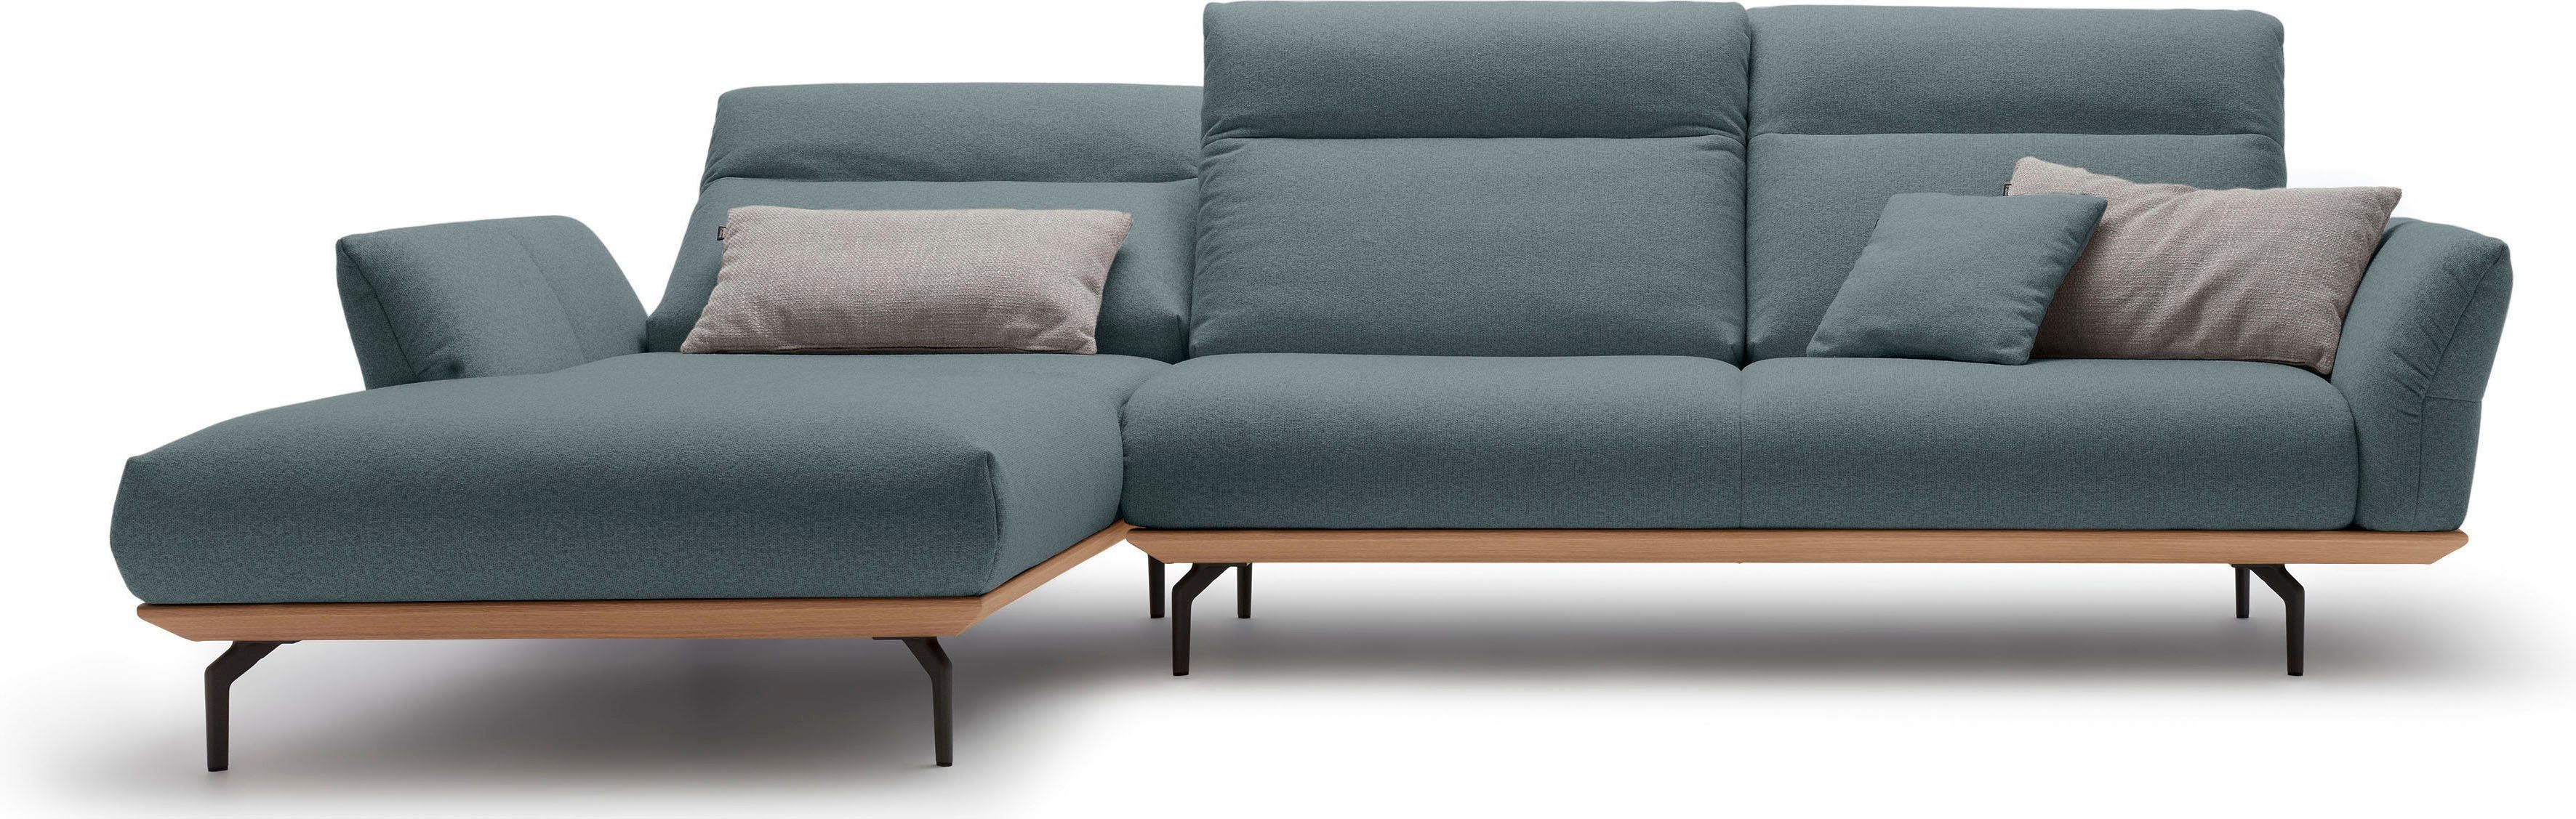 huelsta sofa hoekbank hs.460 sokkel in eiken, onderstel in umbra grijs, breedte 318 cm blauw